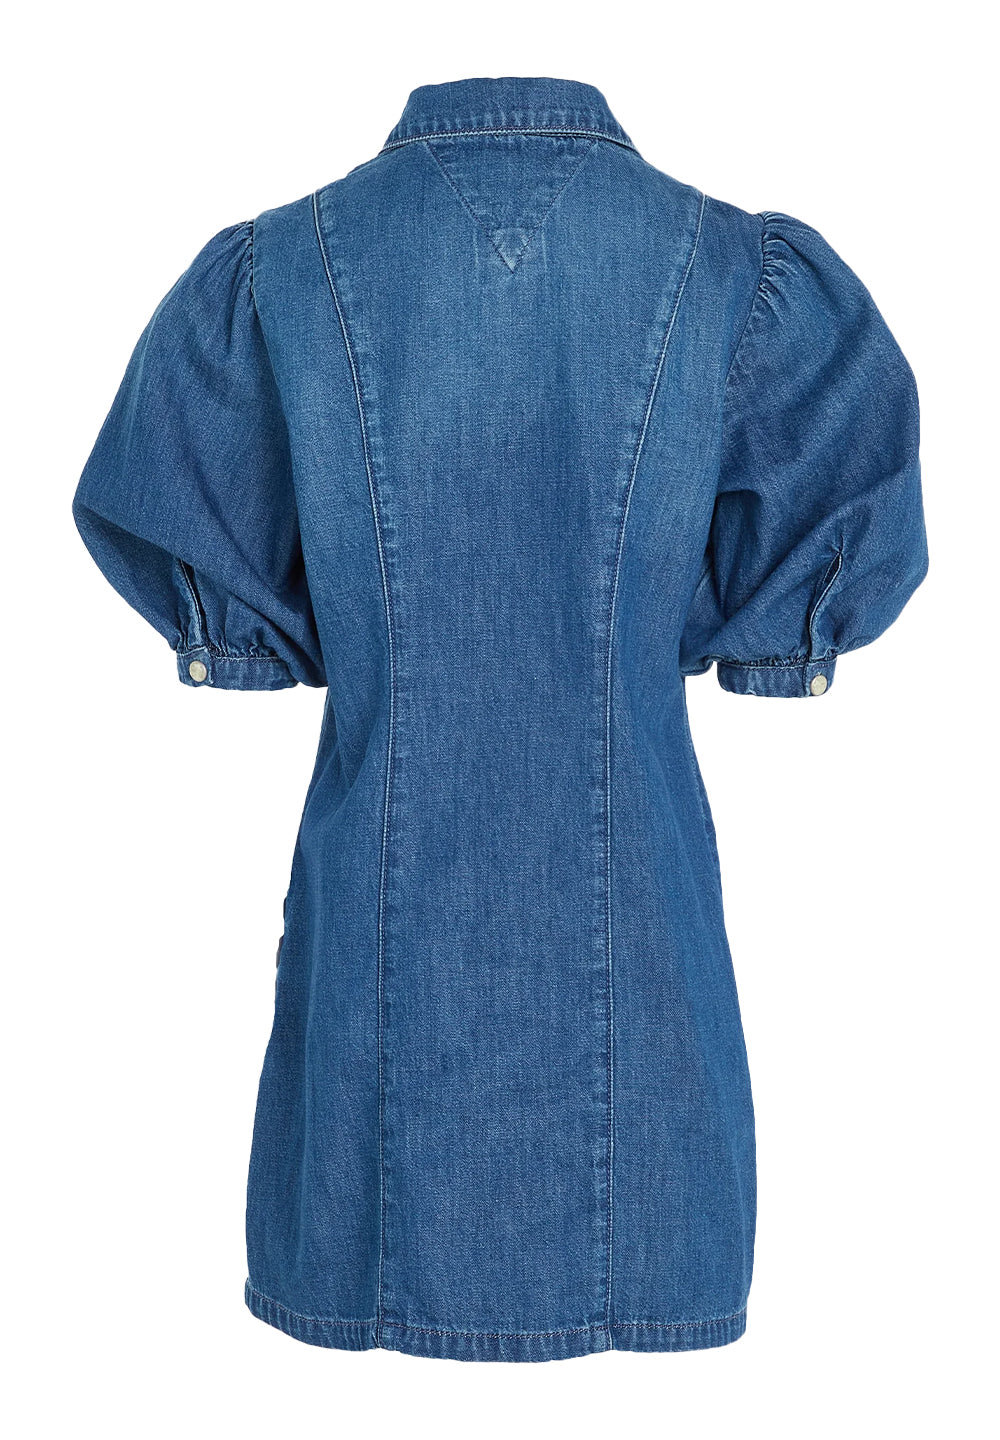 Blue denim dress for girls